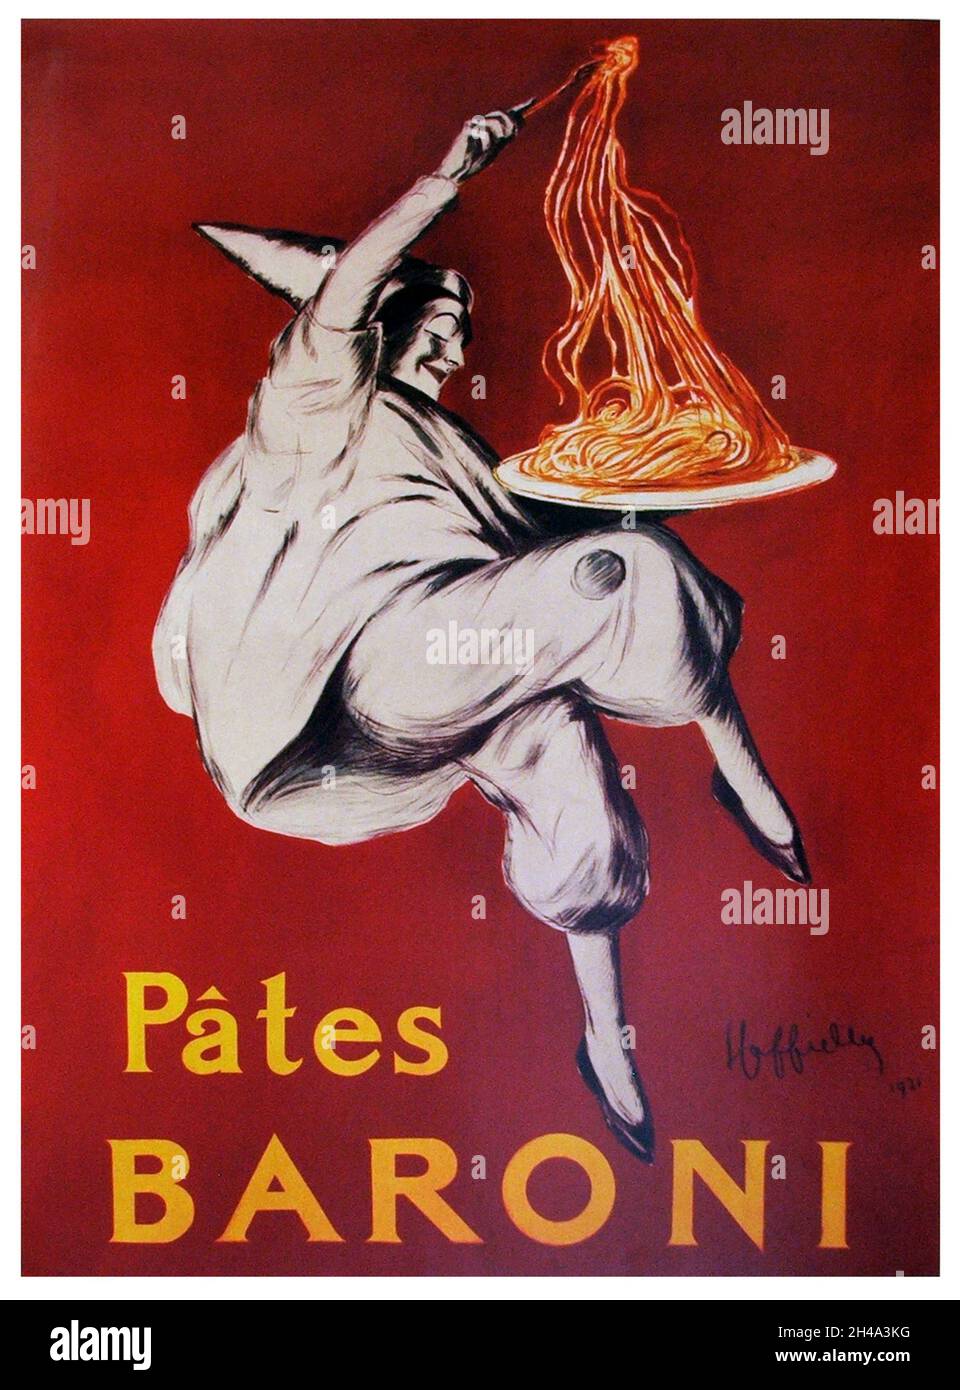 1921 , FRANCIA : Poster francese per LA PUBBLICITÀ DEI BARONI DI PASTA. Opera del pittore Leonetto CAPPIELLO ( 1875 - 1942 ) . - Pubblicità - illustrazione - illustrazione - ANNI venti - 20's - '20 - Pubblicità - annuncio pubblico - reclame - advertise - poster - industria - industria alimentare - ALIMENTO - ALIMENTAZIONI - FRANCIA - INDUSTRIA - FABBRICA - cibo - cibo ----- Archivio GBB Foto Stock